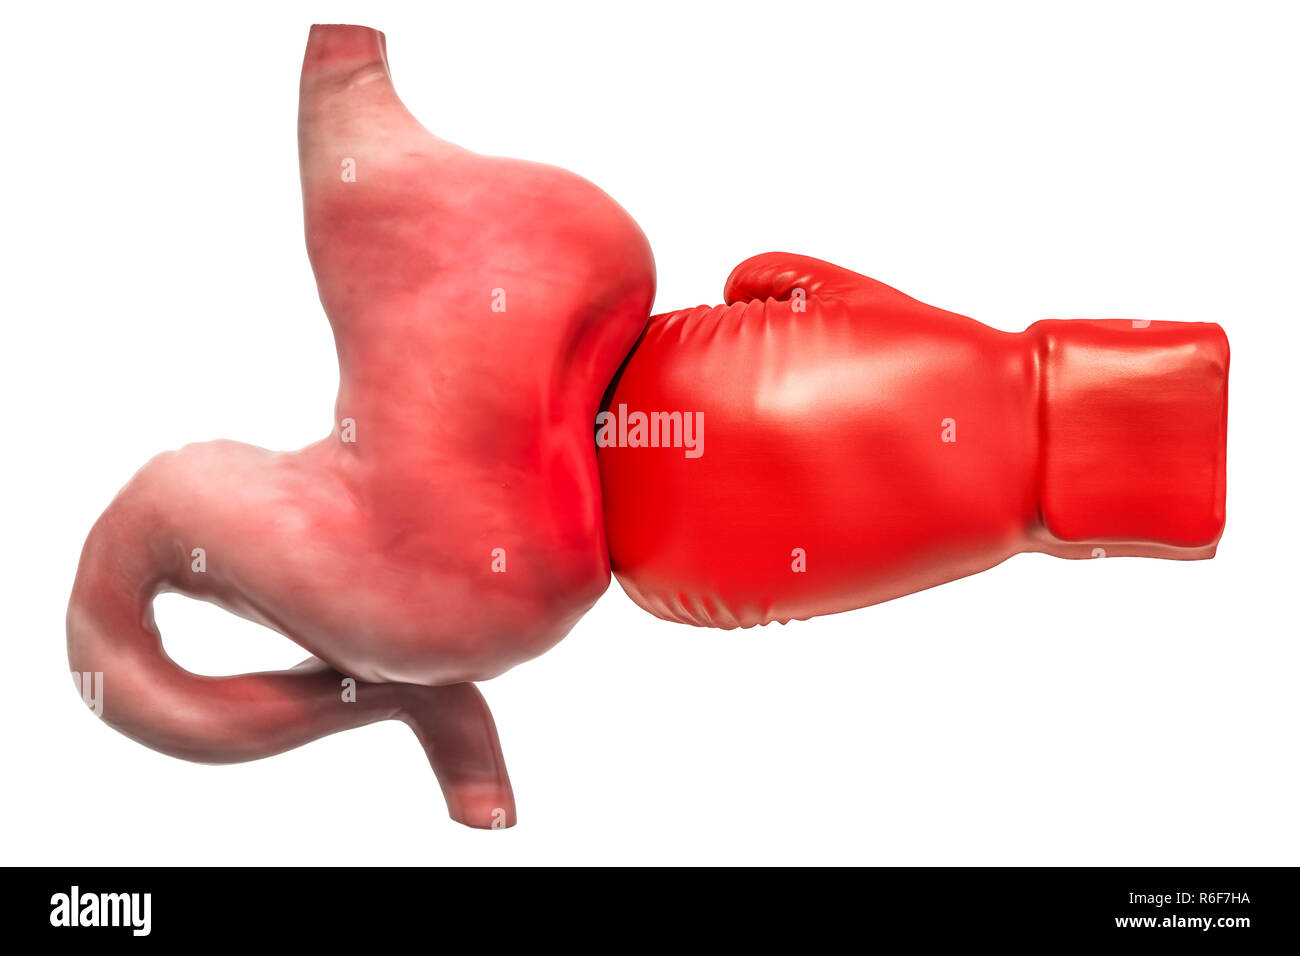 Dolor en el estómago, el concepto de enfermedad del estómago. Estómago humano con guante de boxeo. 3D rendering aislado sobre fondo blanco. Foto de stock